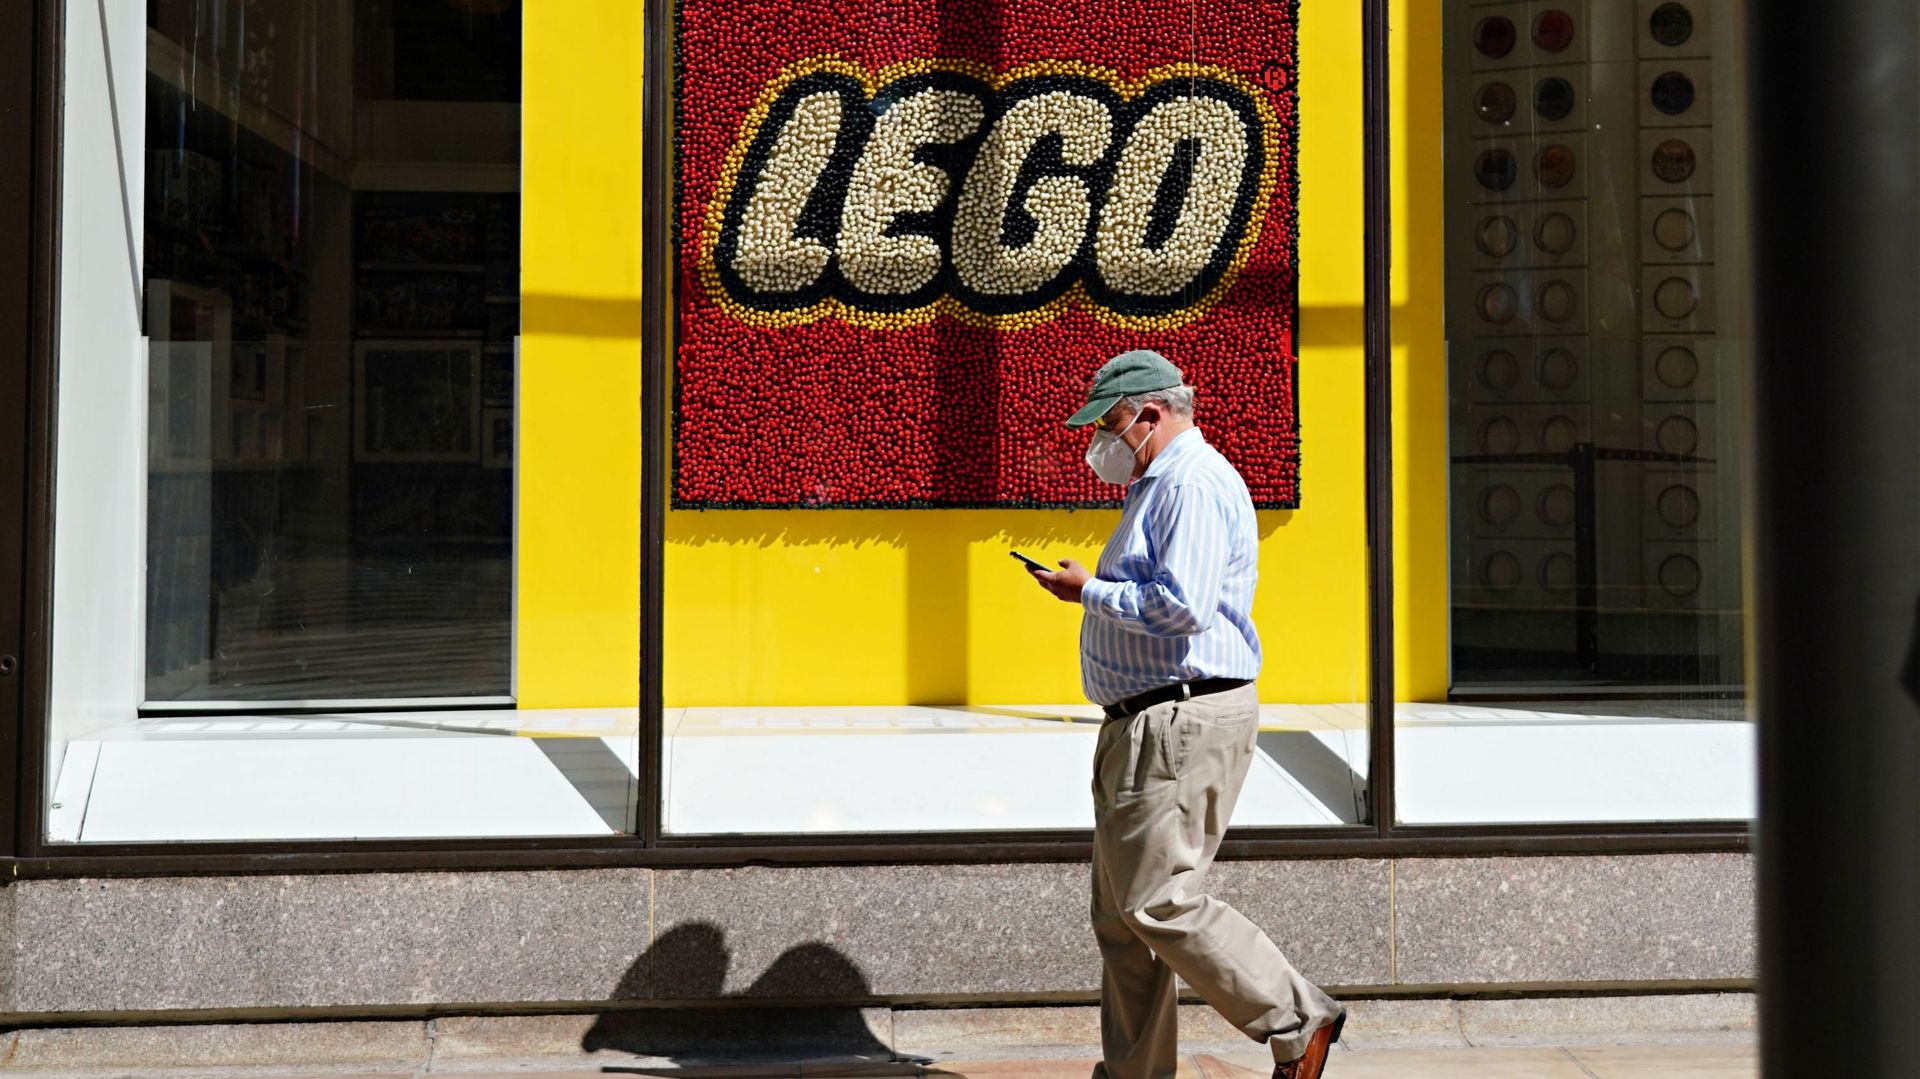 La demande de jouets Lego a été plus importante durant ce semestre.